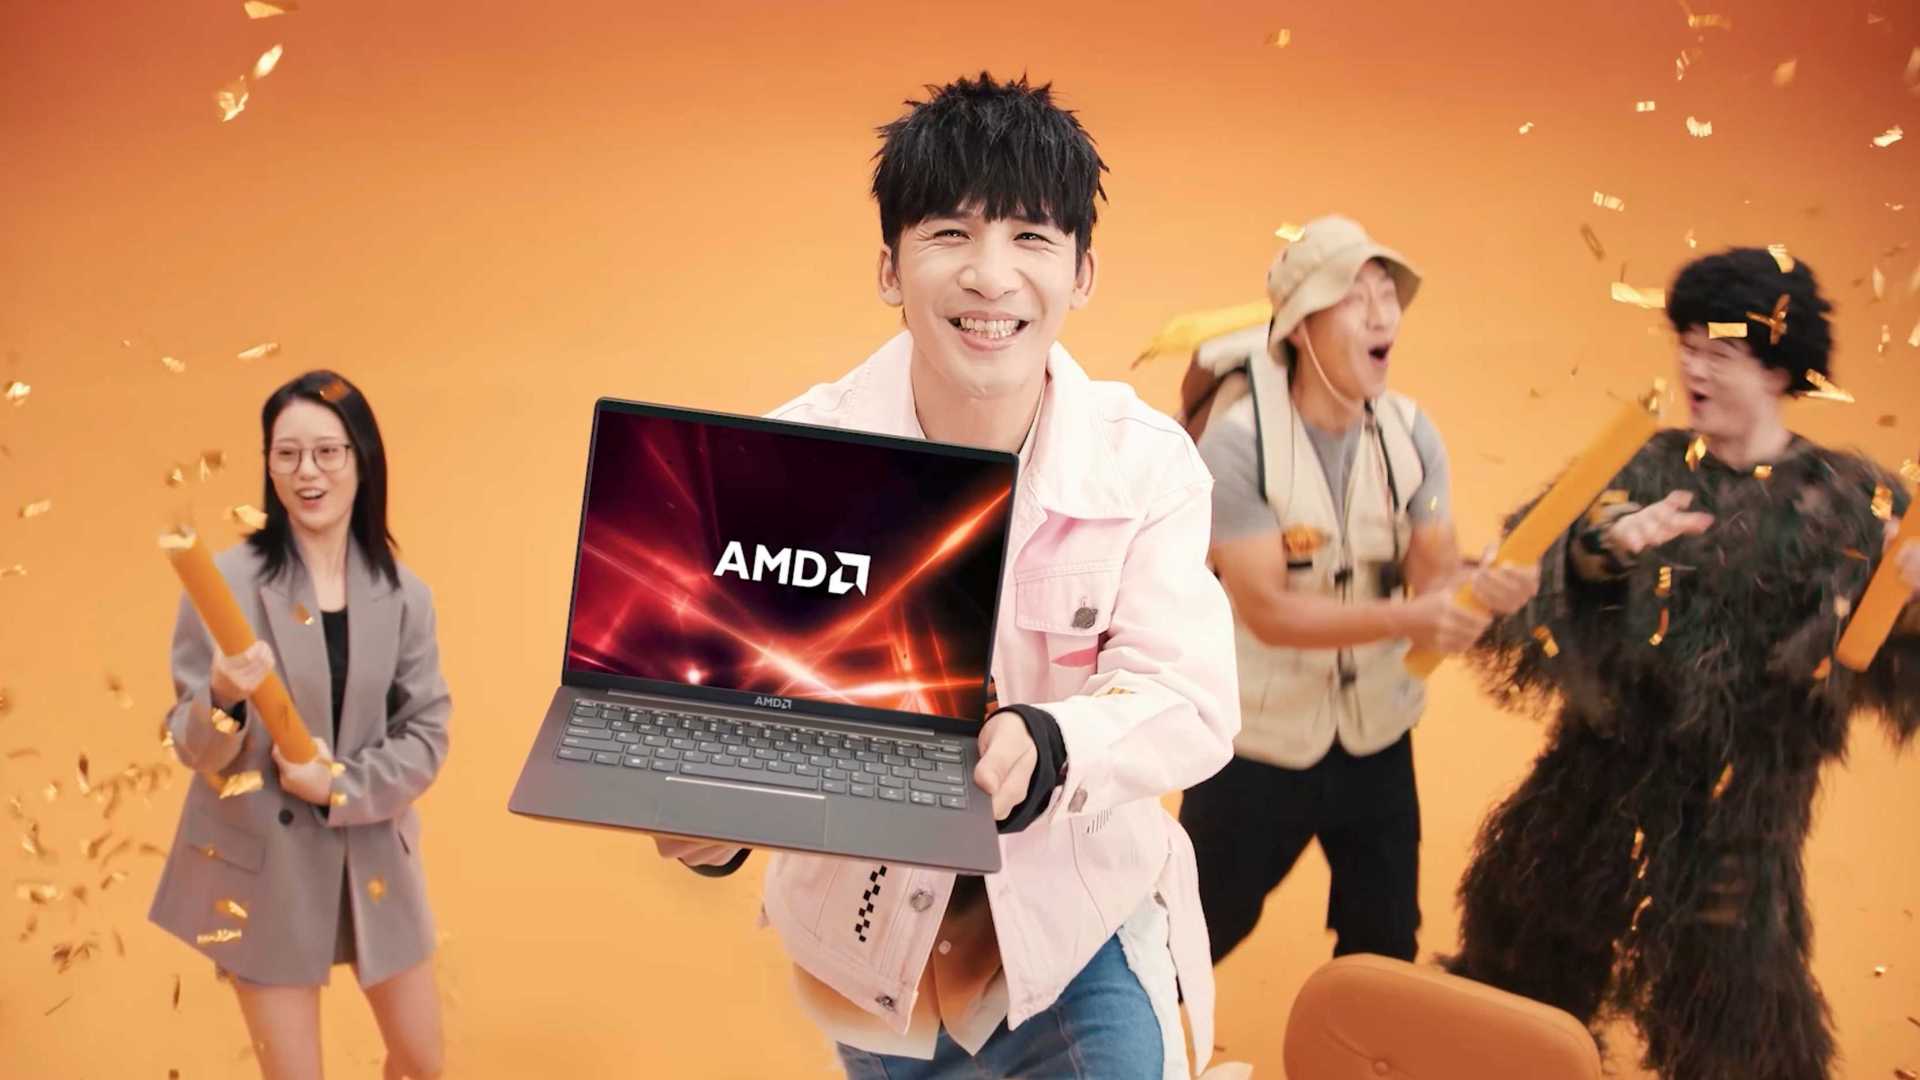 AMD卖点视频&大张伟